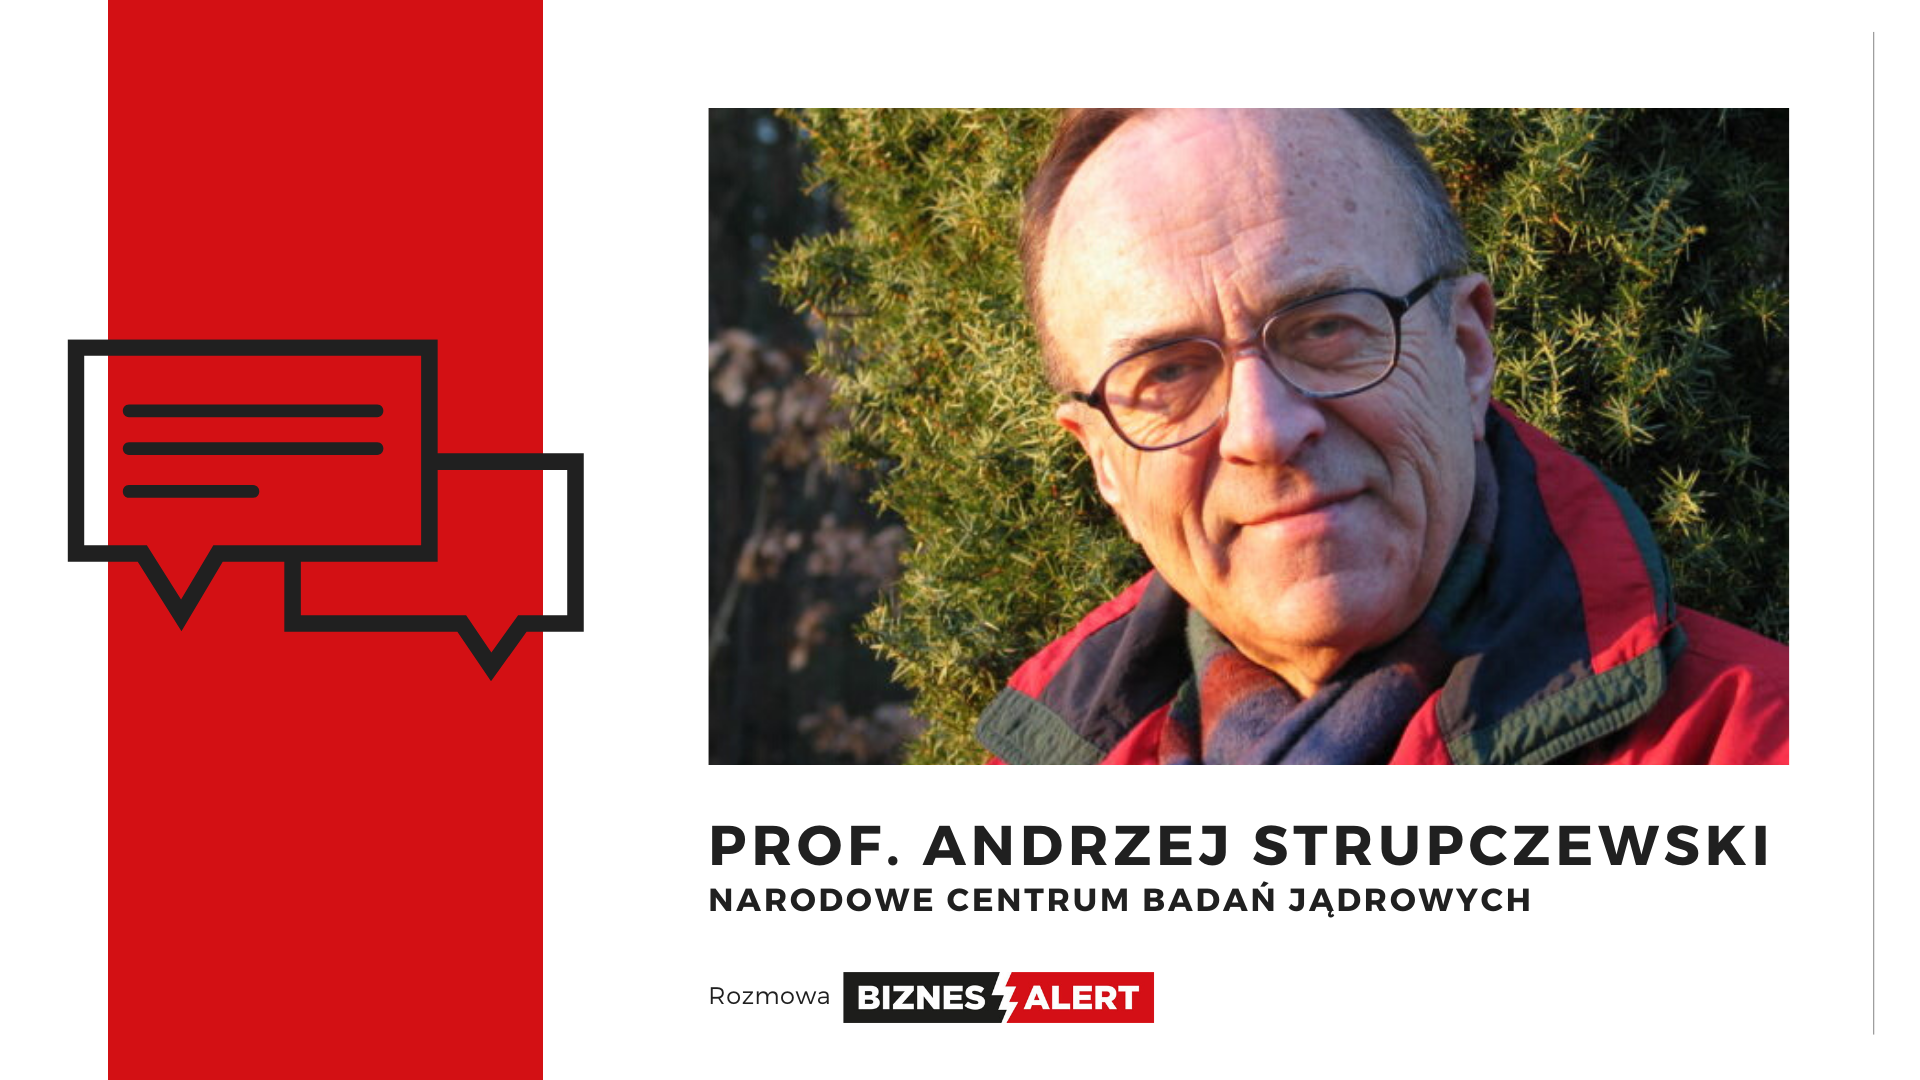 Rozmowa BiznesAlert.pl. Prof. Andrzej Strupczewski